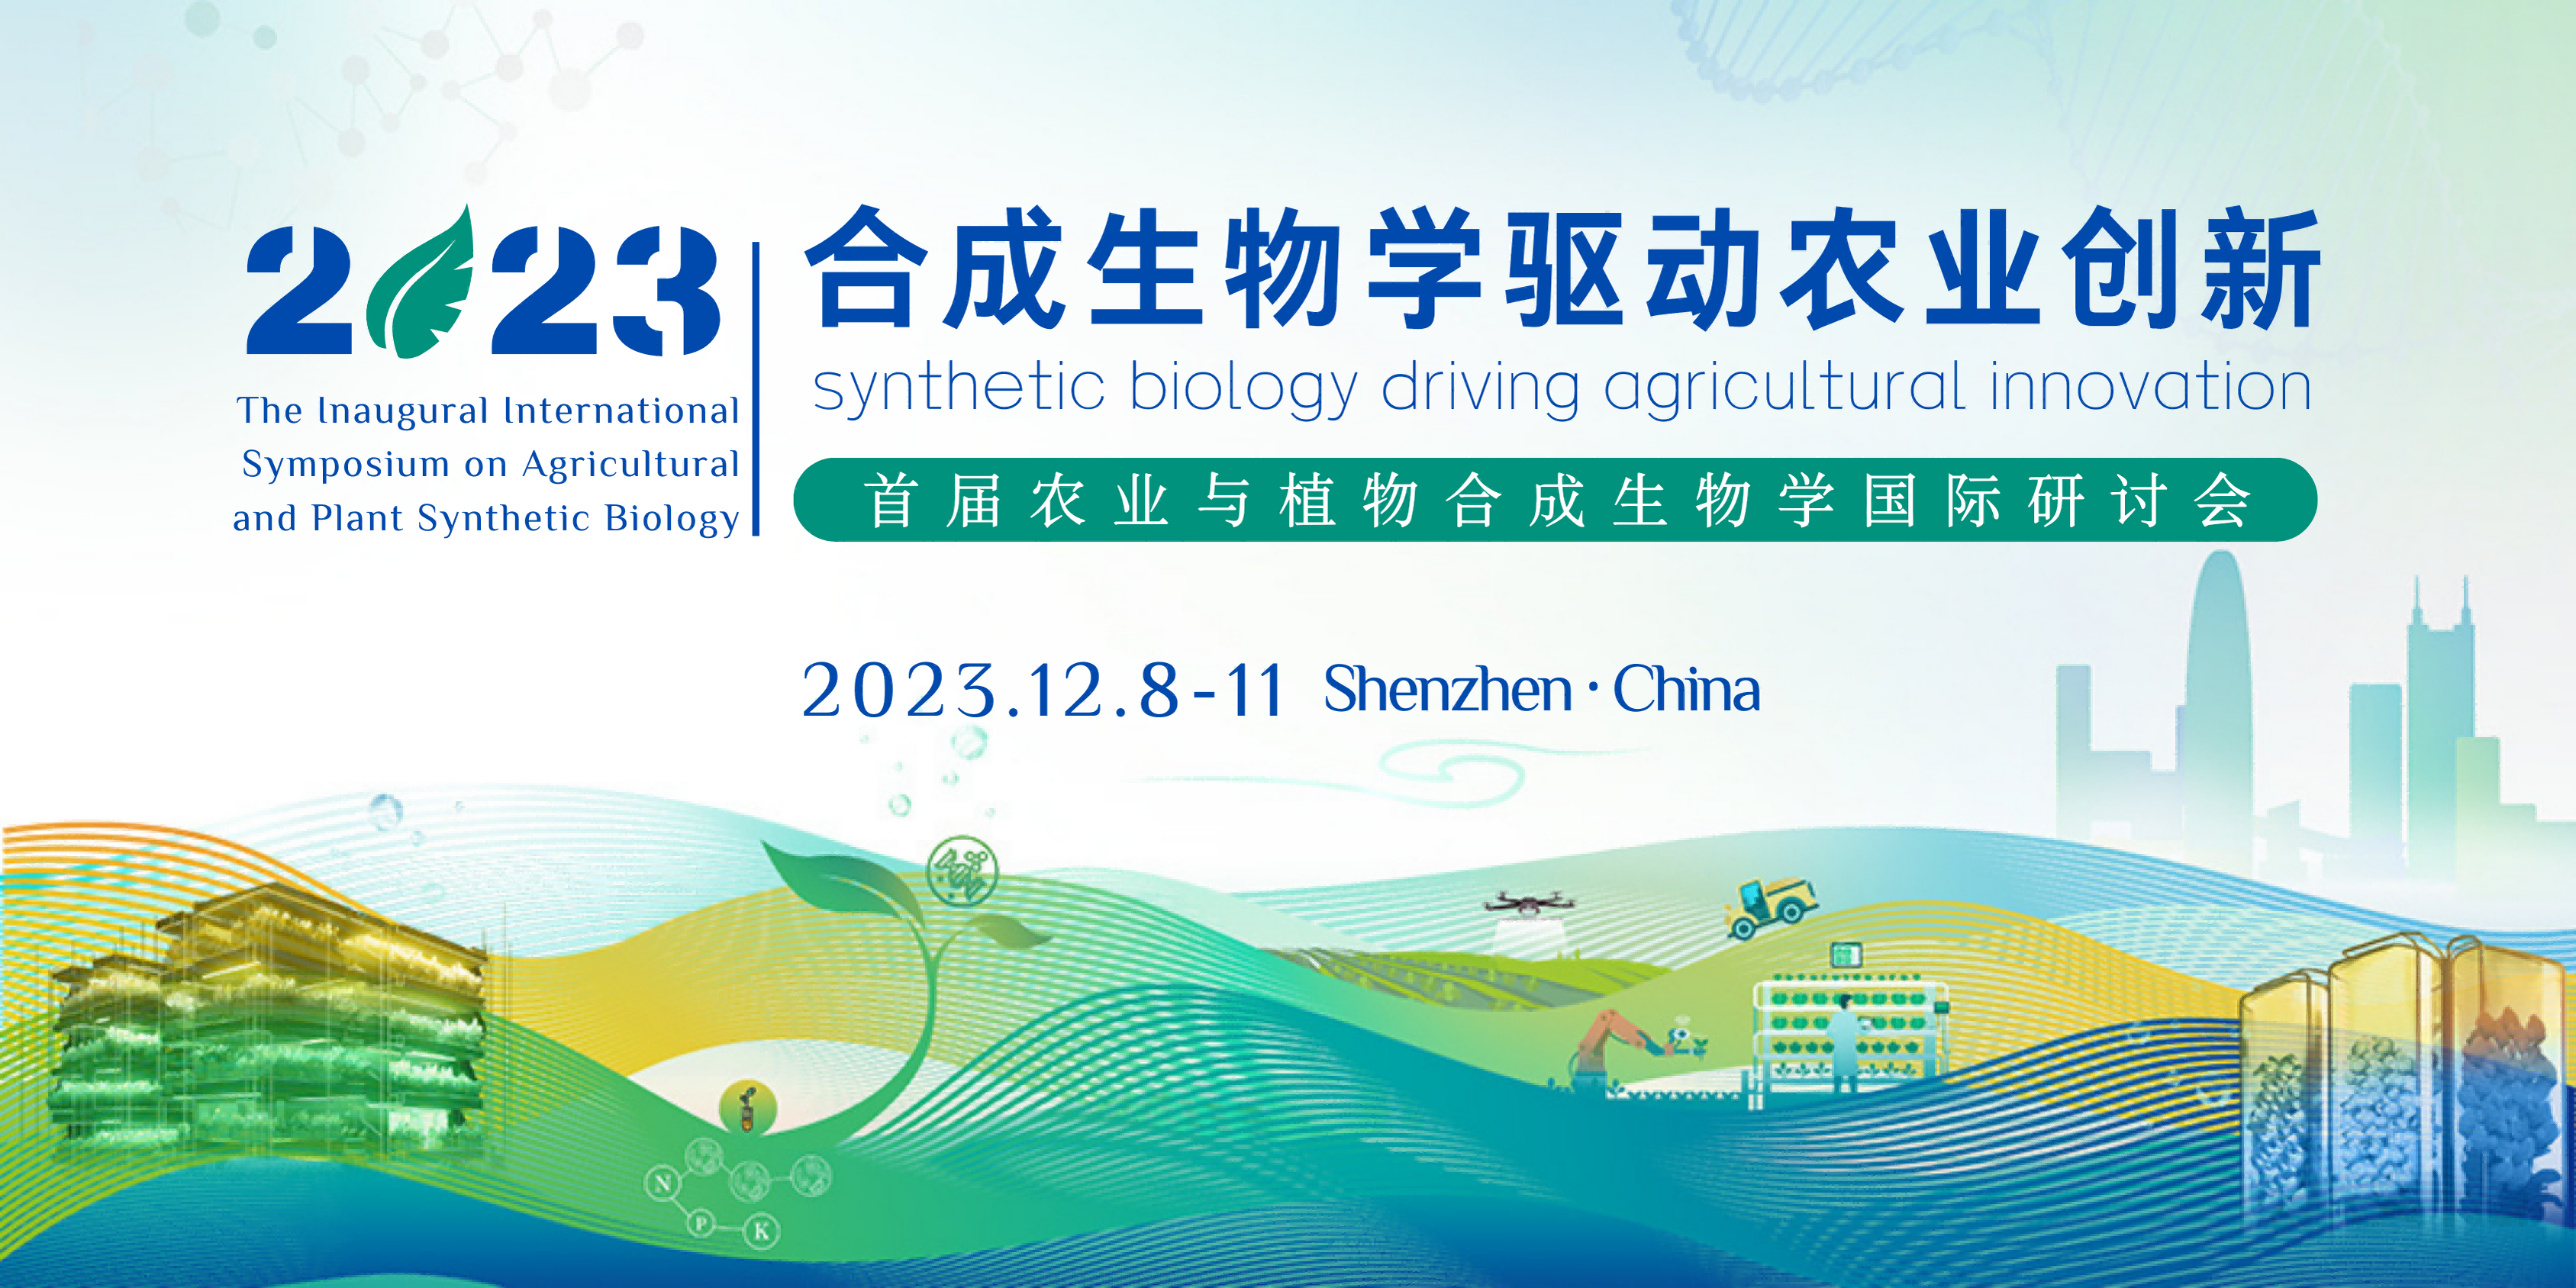 会议通知 | 首届农业与植物合成生物学国际研讨会即将启幕，邀您共聚深圳！